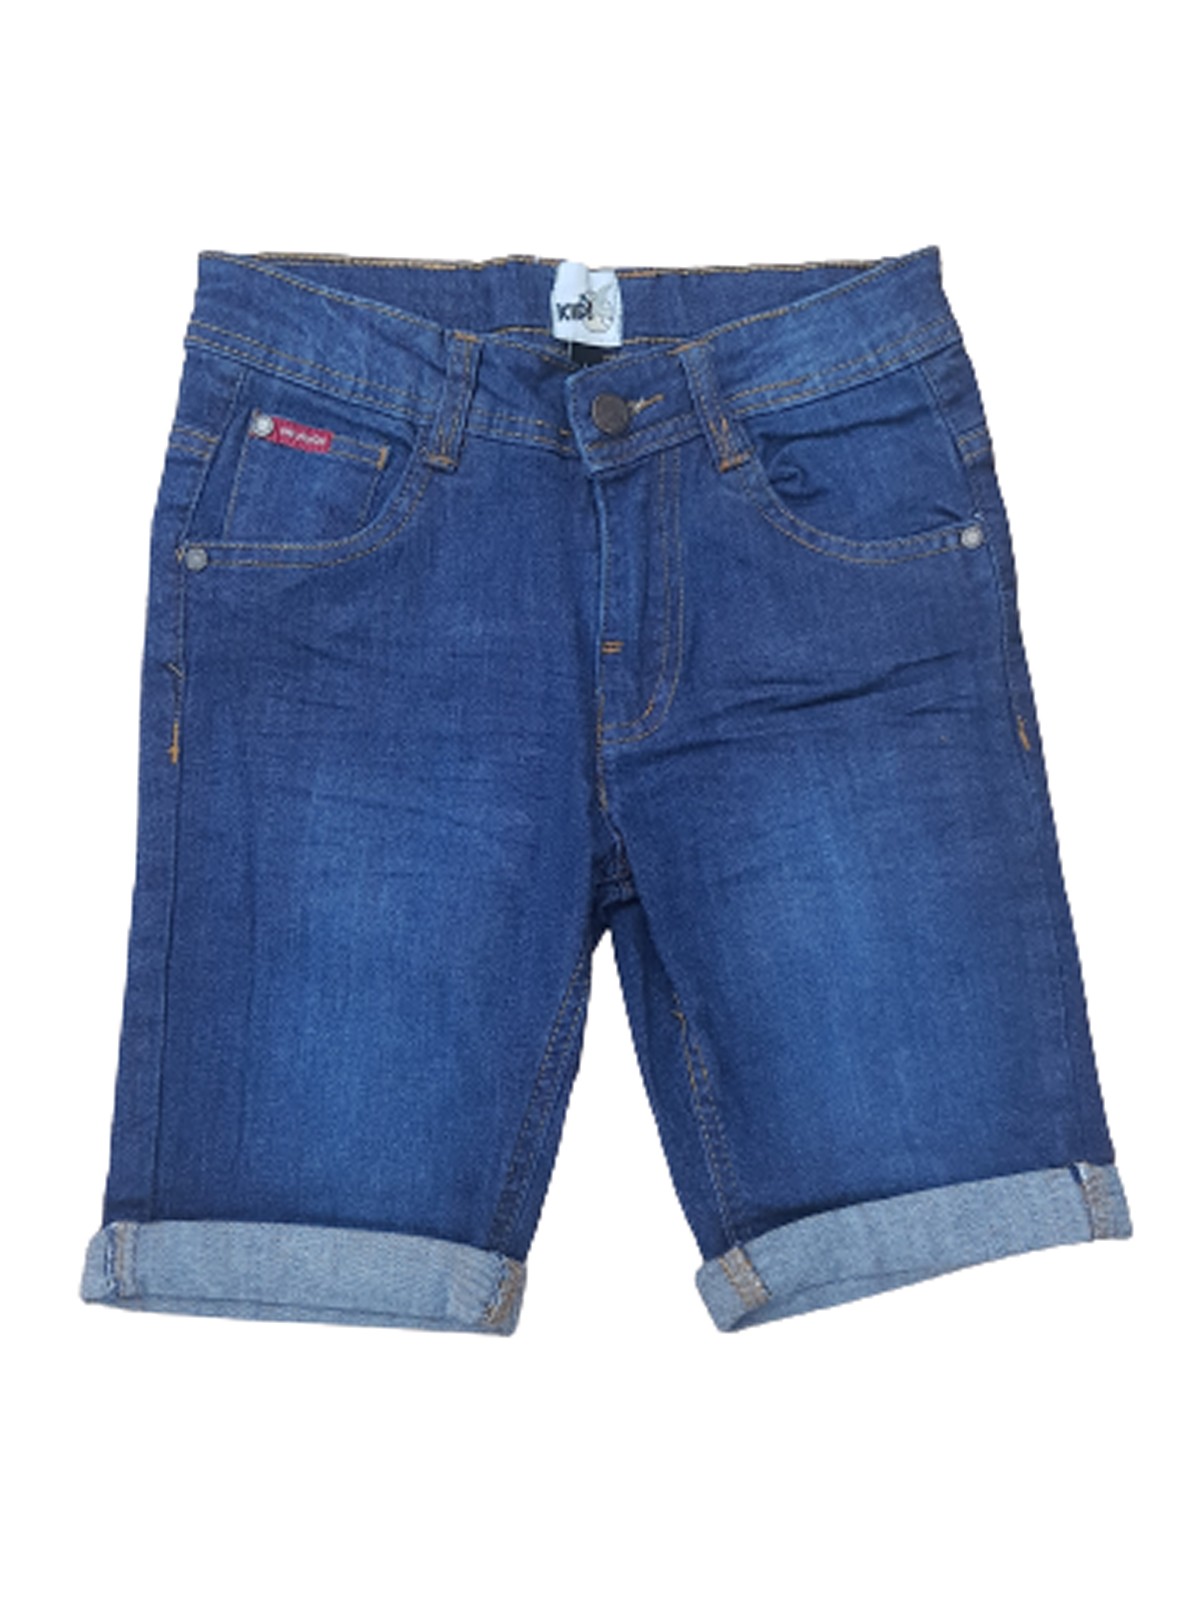 Bermuda jeans Chevignon 